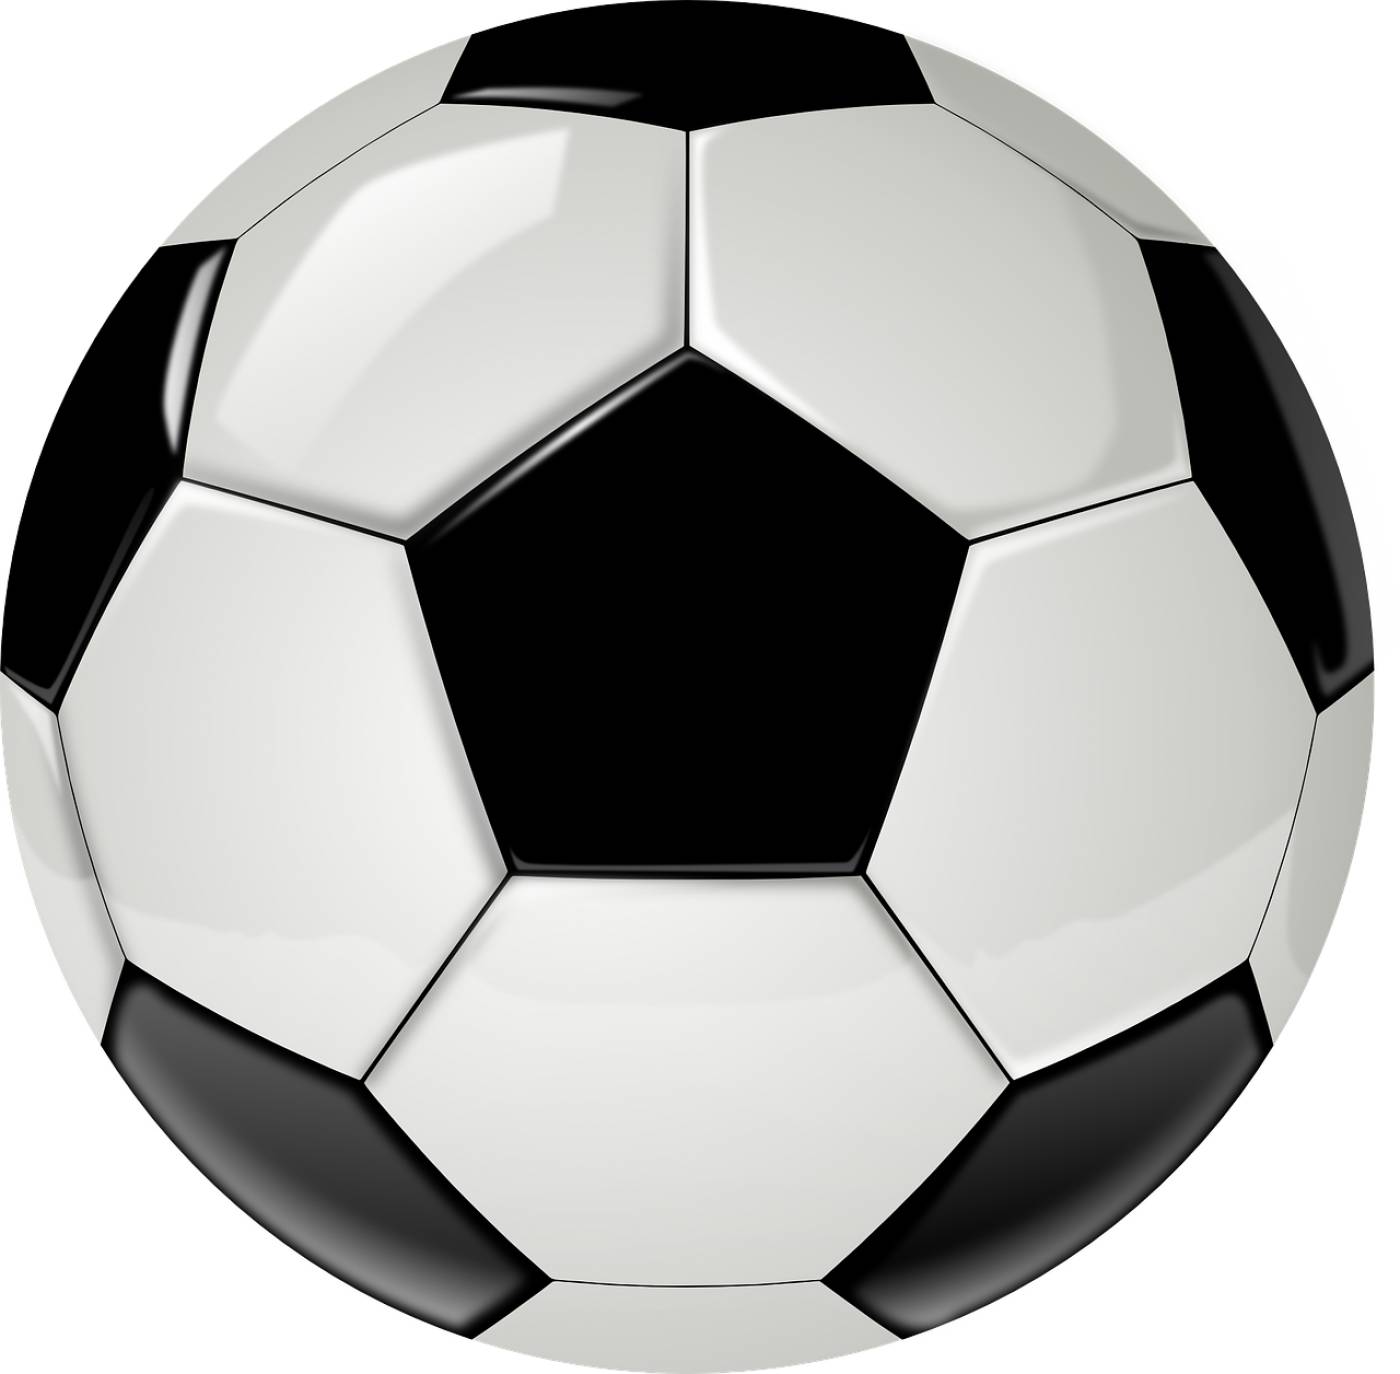 ball soccer football sport  svg vector